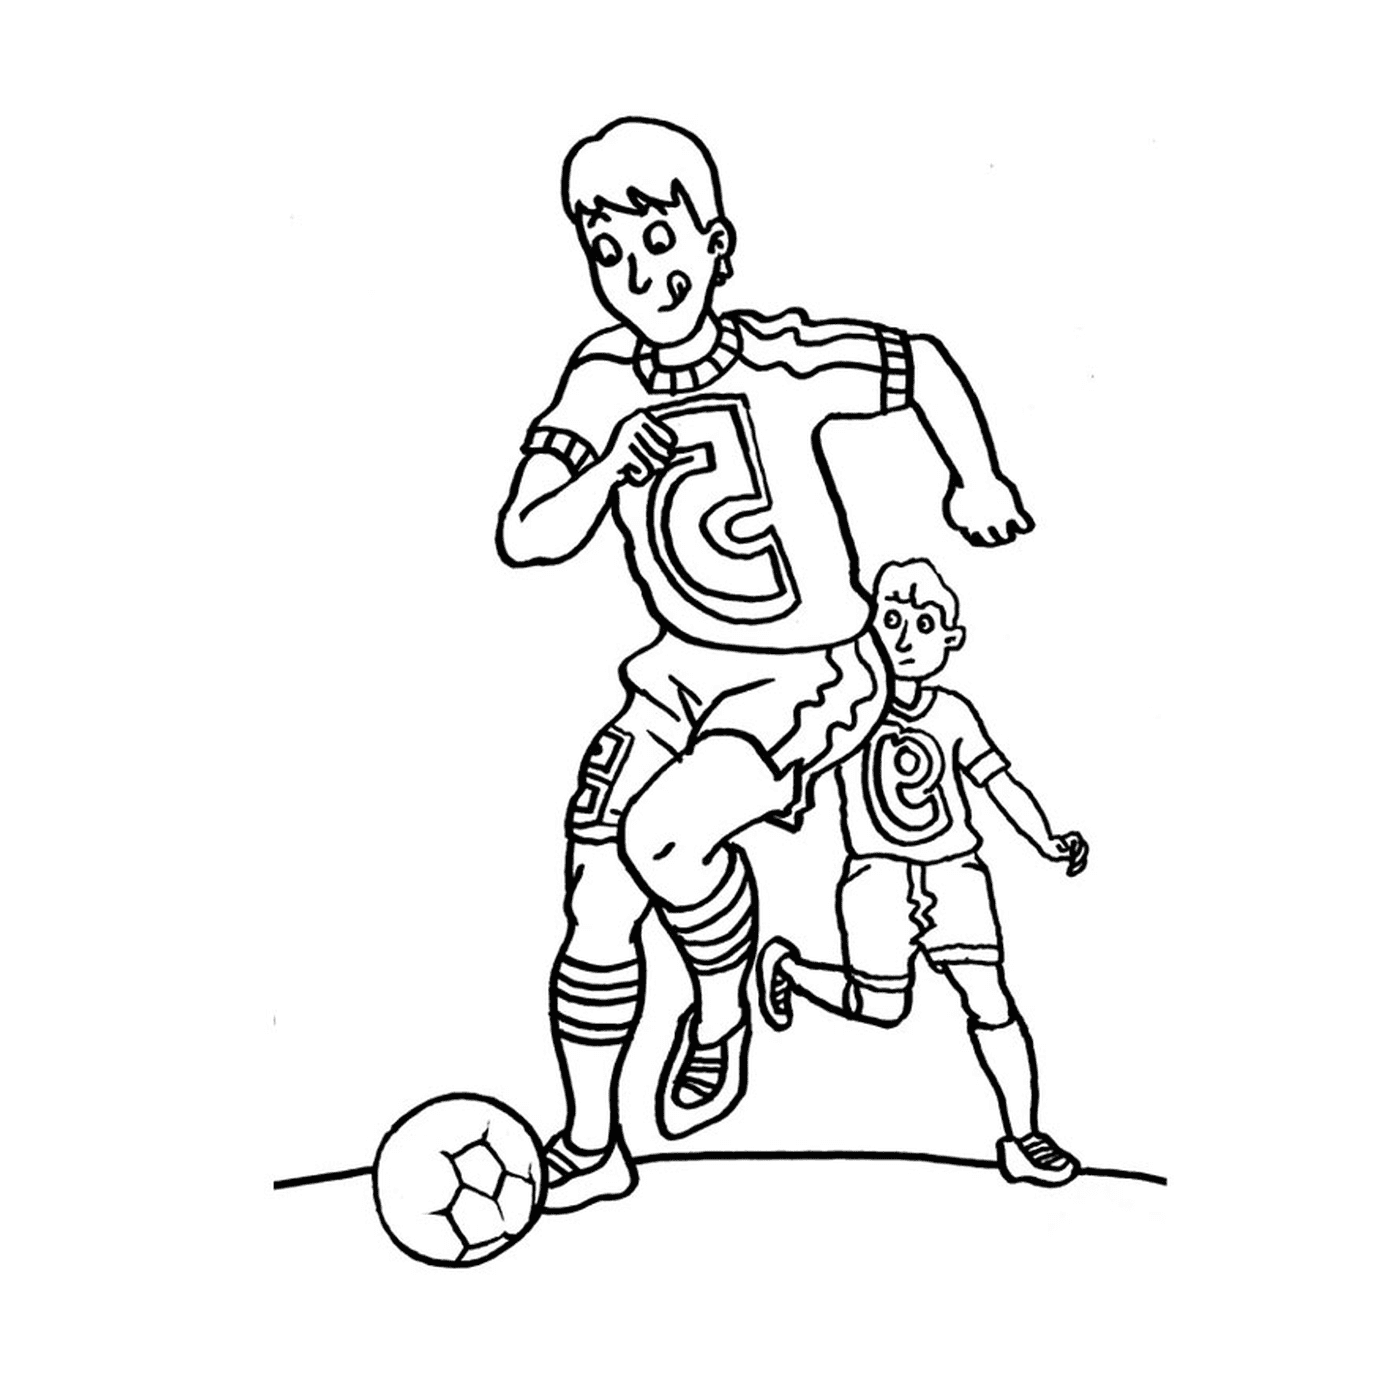  Бордо играет в футбол 